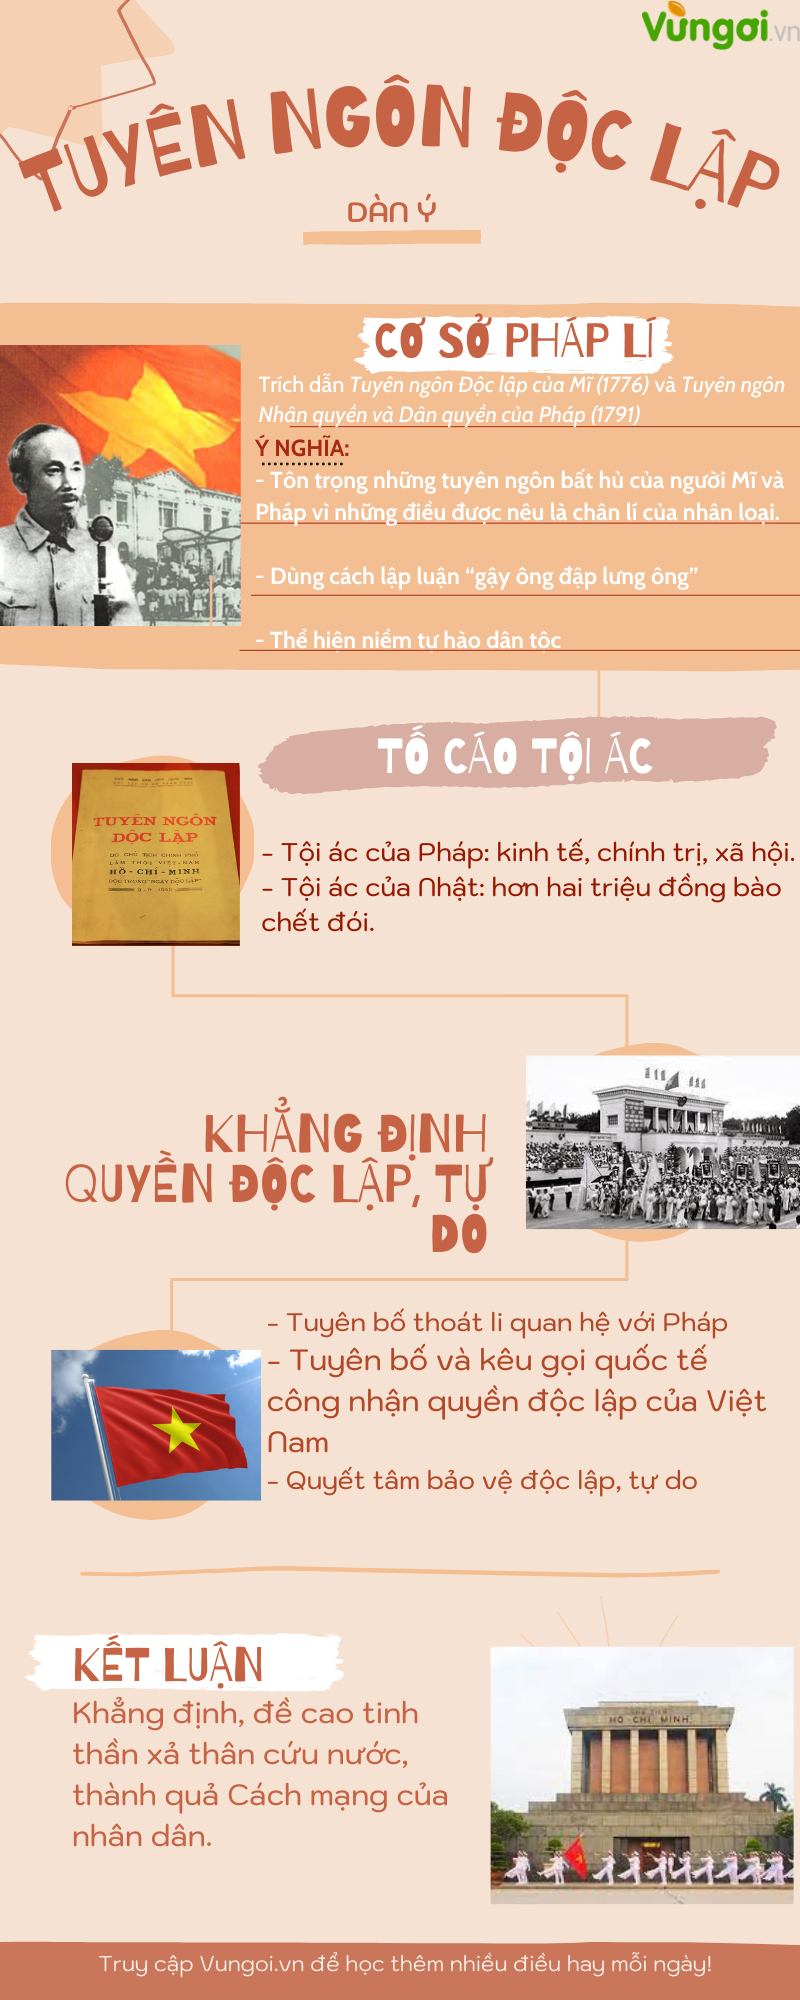 Phân tích chi tiết Tuyên ngôn độc lập (Hồ Chí Minh) - ảnh 1